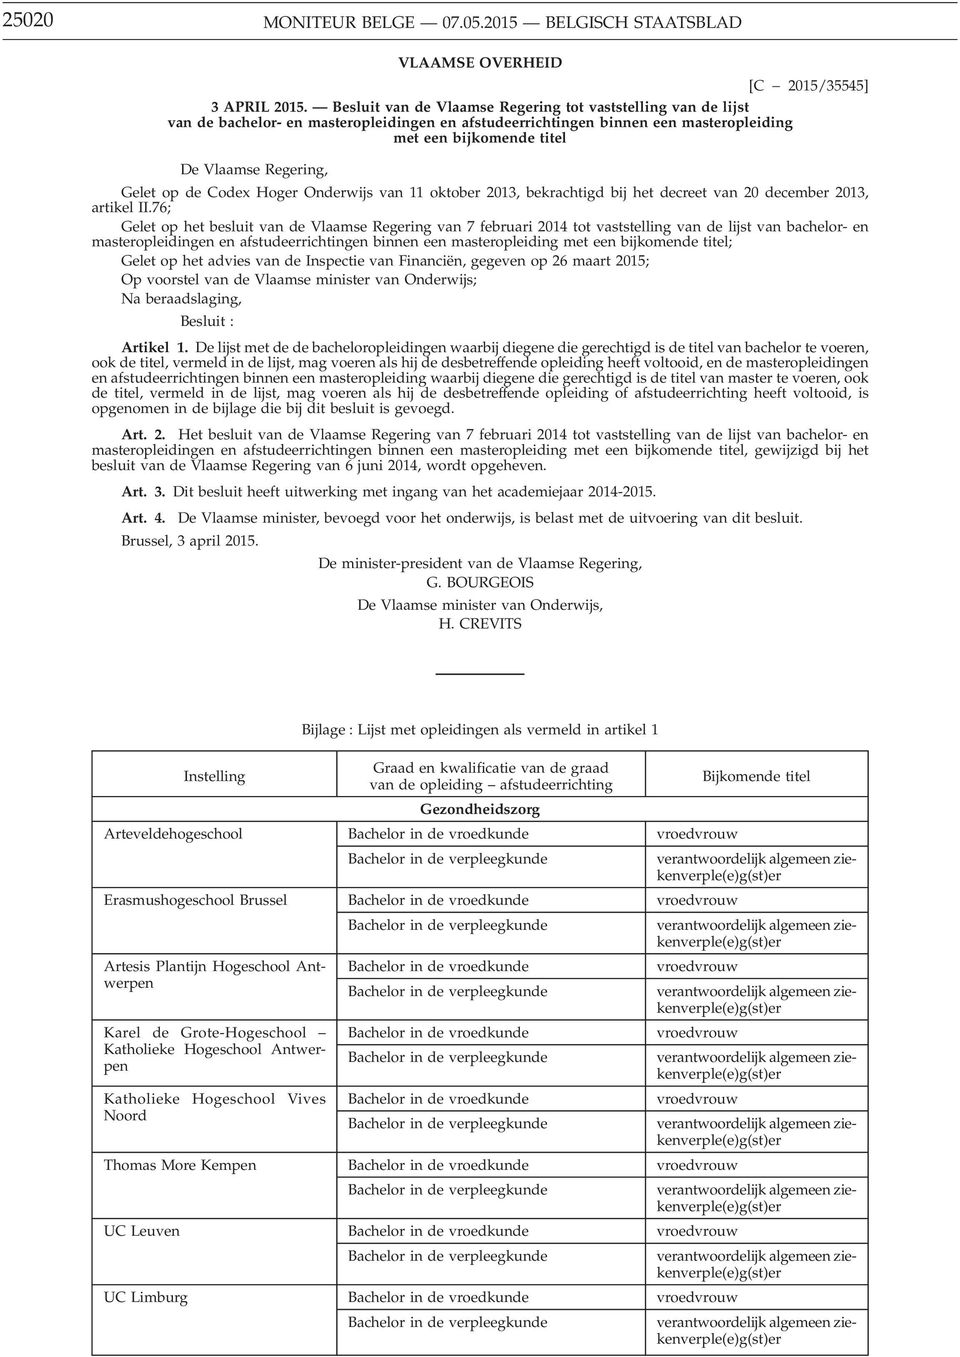 Gelet op de Codex Hoger Onderwijs van 11 oktober 2013, bekrachtigd bij het decreet van 20 december 2013, artikel II.